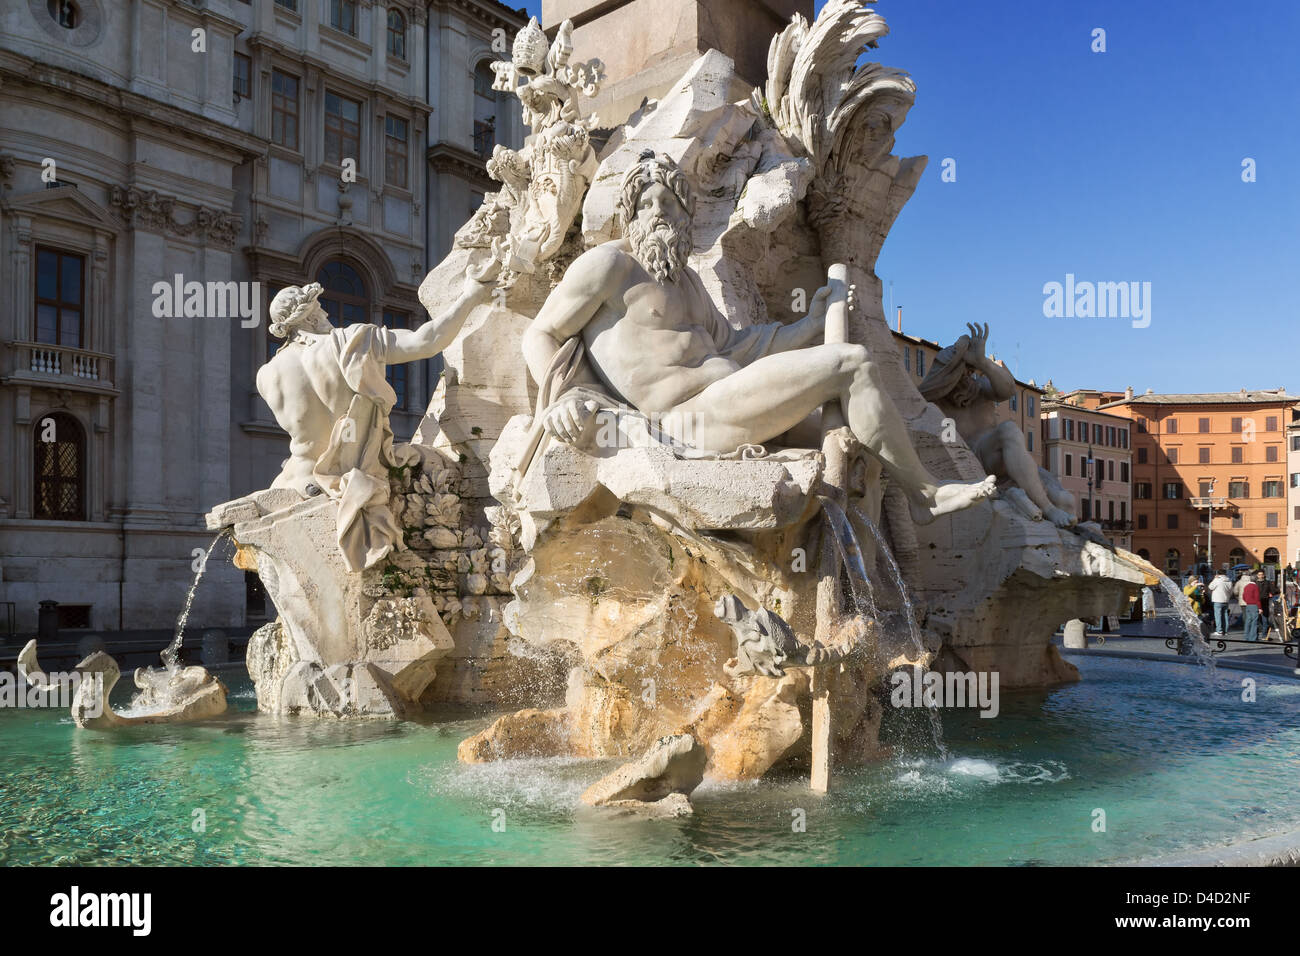 Fontana dei Quattro Fiumi, Piazza Navona, Rome, Italie Banque D'Images